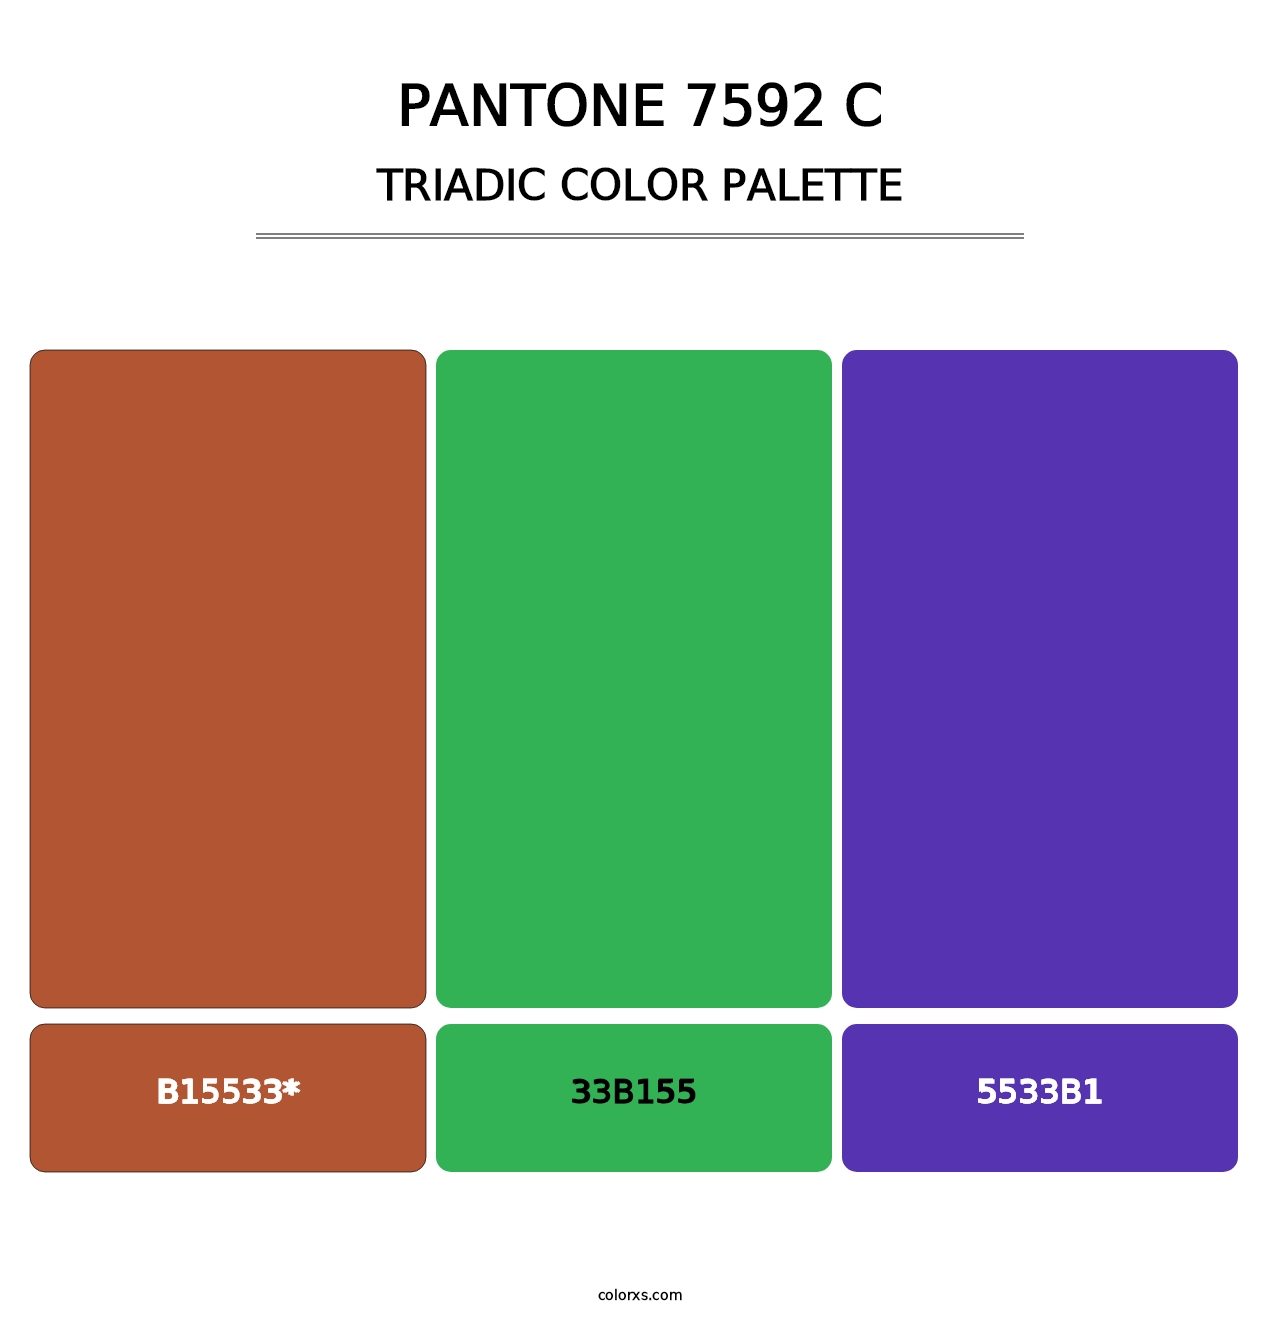 PANTONE 7592 C - Triadic Color Palette